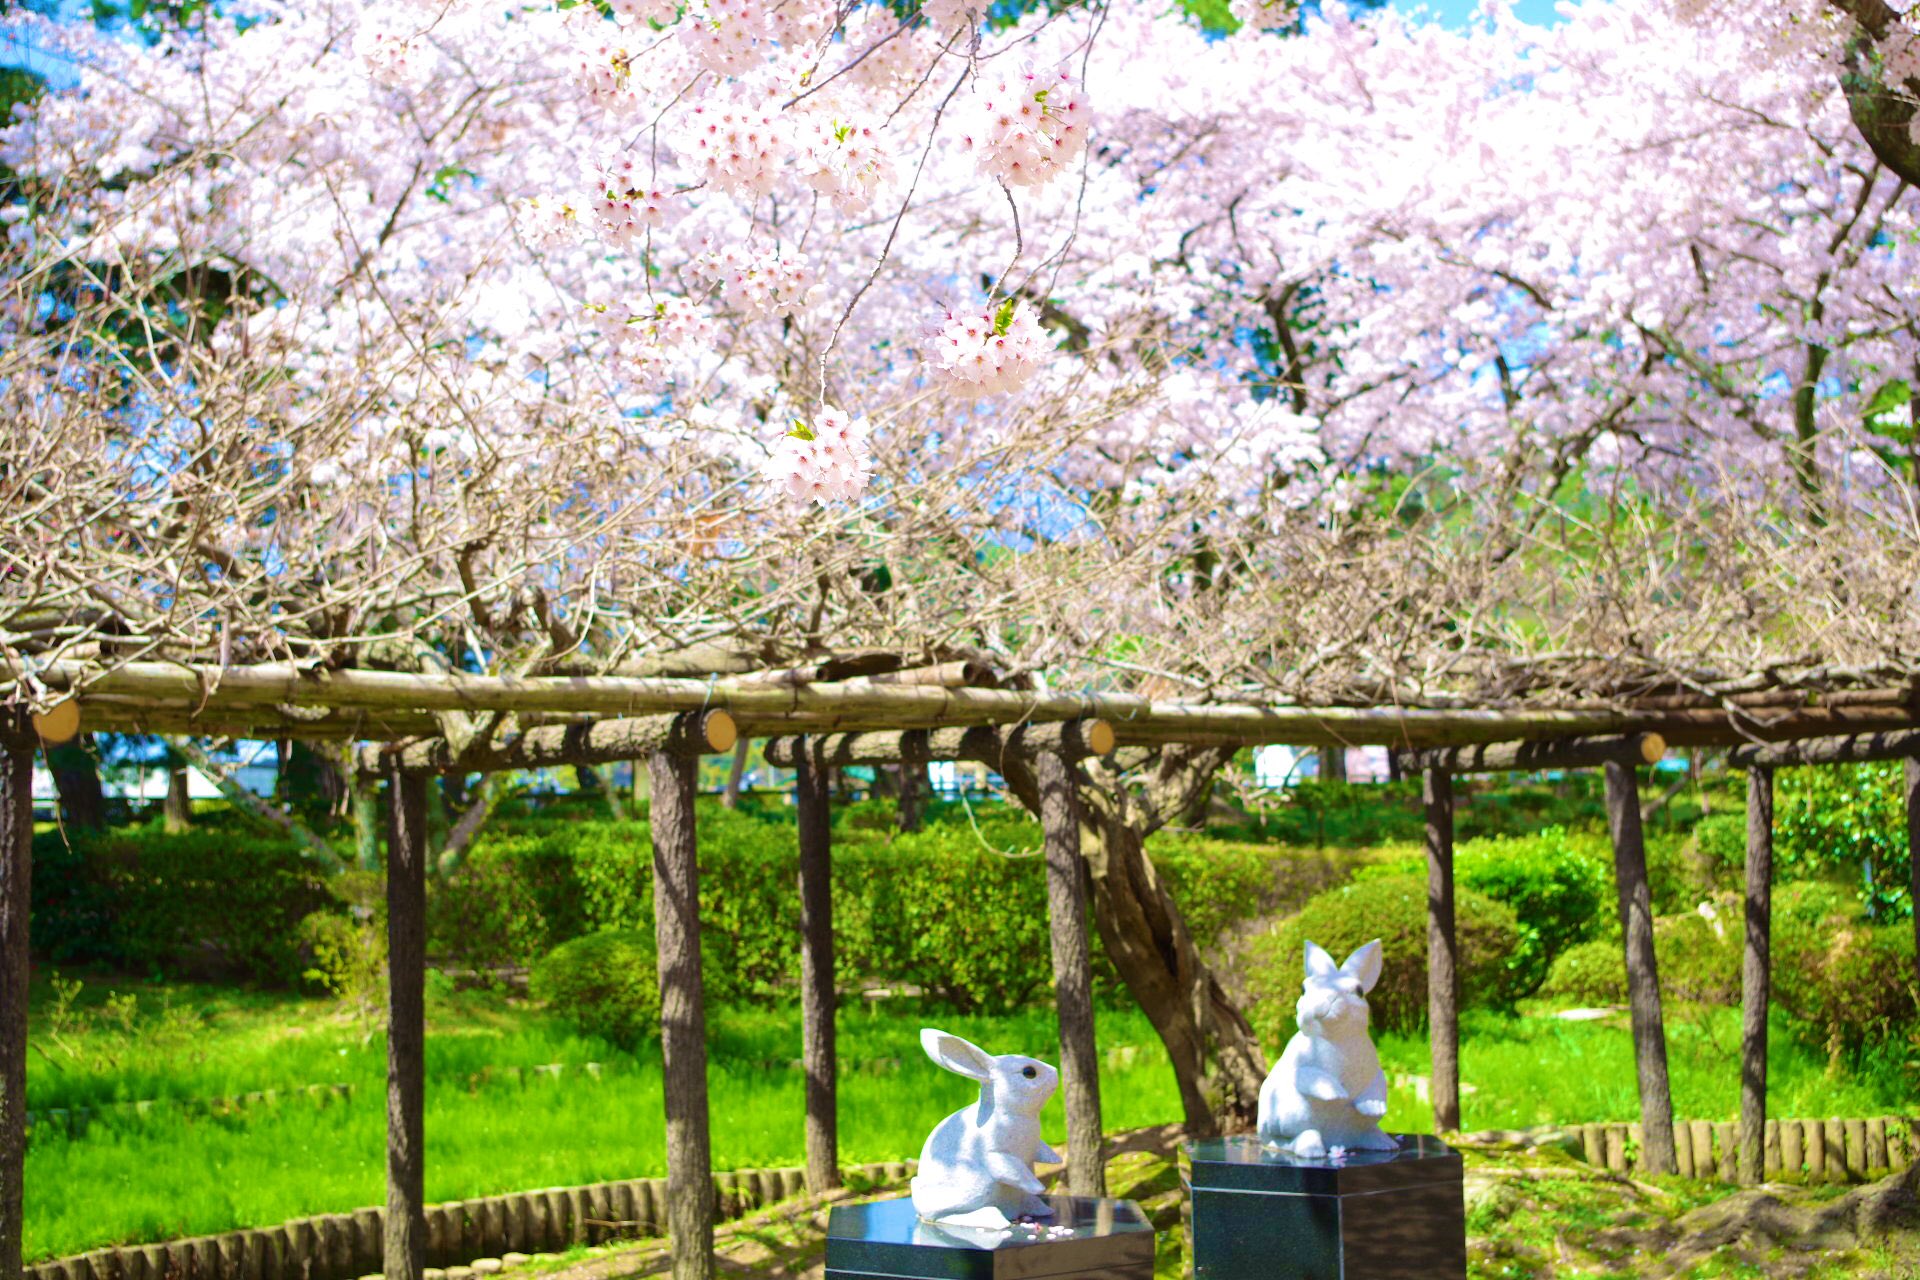 日比谷しまね館 Ar Twitter 本日は出雲大社神苑の桜をご紹介します 出雲大社神苑といえば 緑の美しい場所ですが 桜の季節は緑とピンクの色合いがとても美しいのです また うさぎ達と桜の組み合わせも可愛らしいですよ 春休みの旅行は島根県へぜひどうぞ